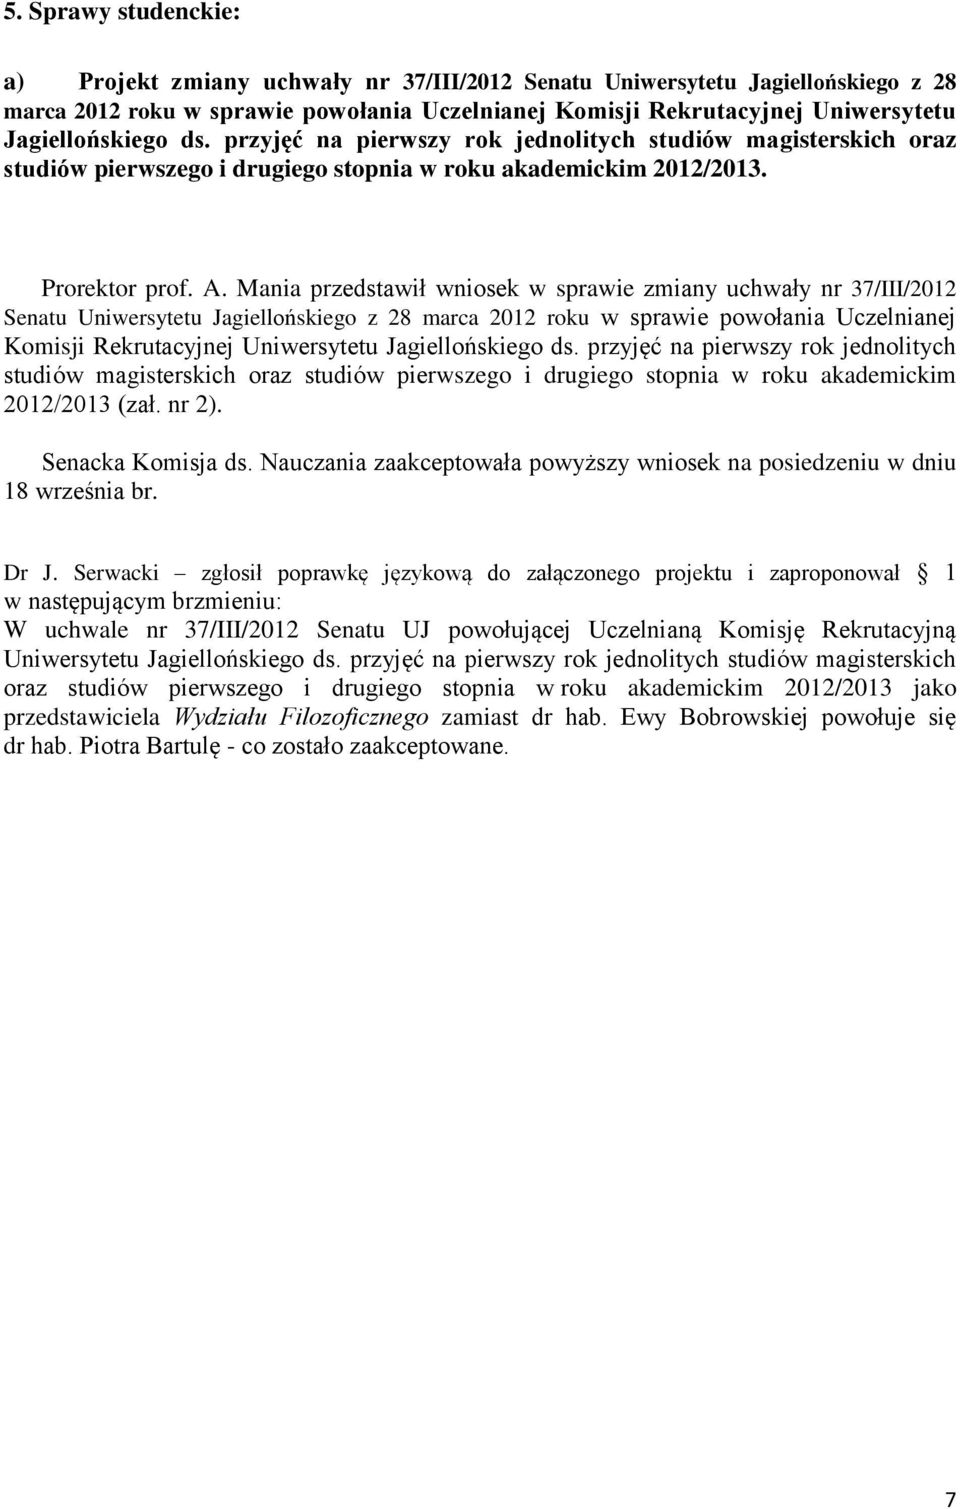 Mania przedstawił wniosek w sprawie zmiany uchwały nr 37/III/2012 Senatu Uniwersytetu Jagiellońskiego z 28 marca 2012 roku w sprawie powołania Uczelnianej Komisji Rekrutacyjnej Uniwersytetu